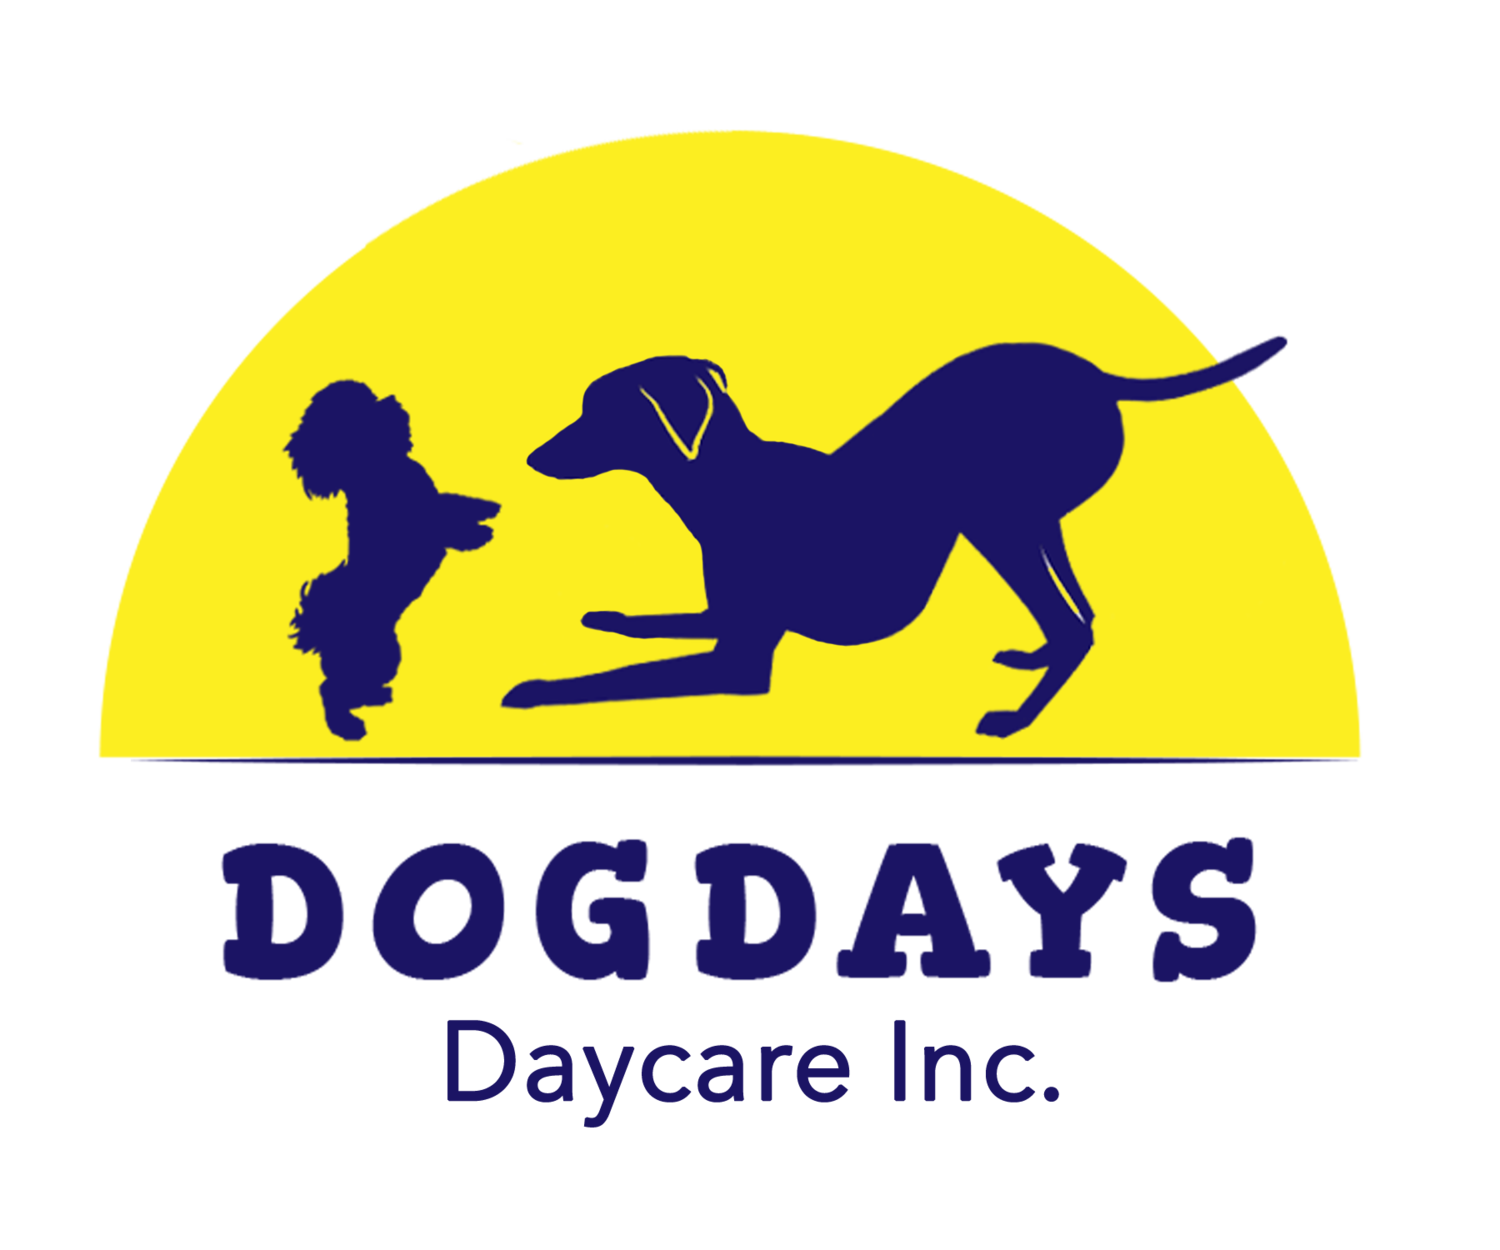 Dogdays Daycare Inc.